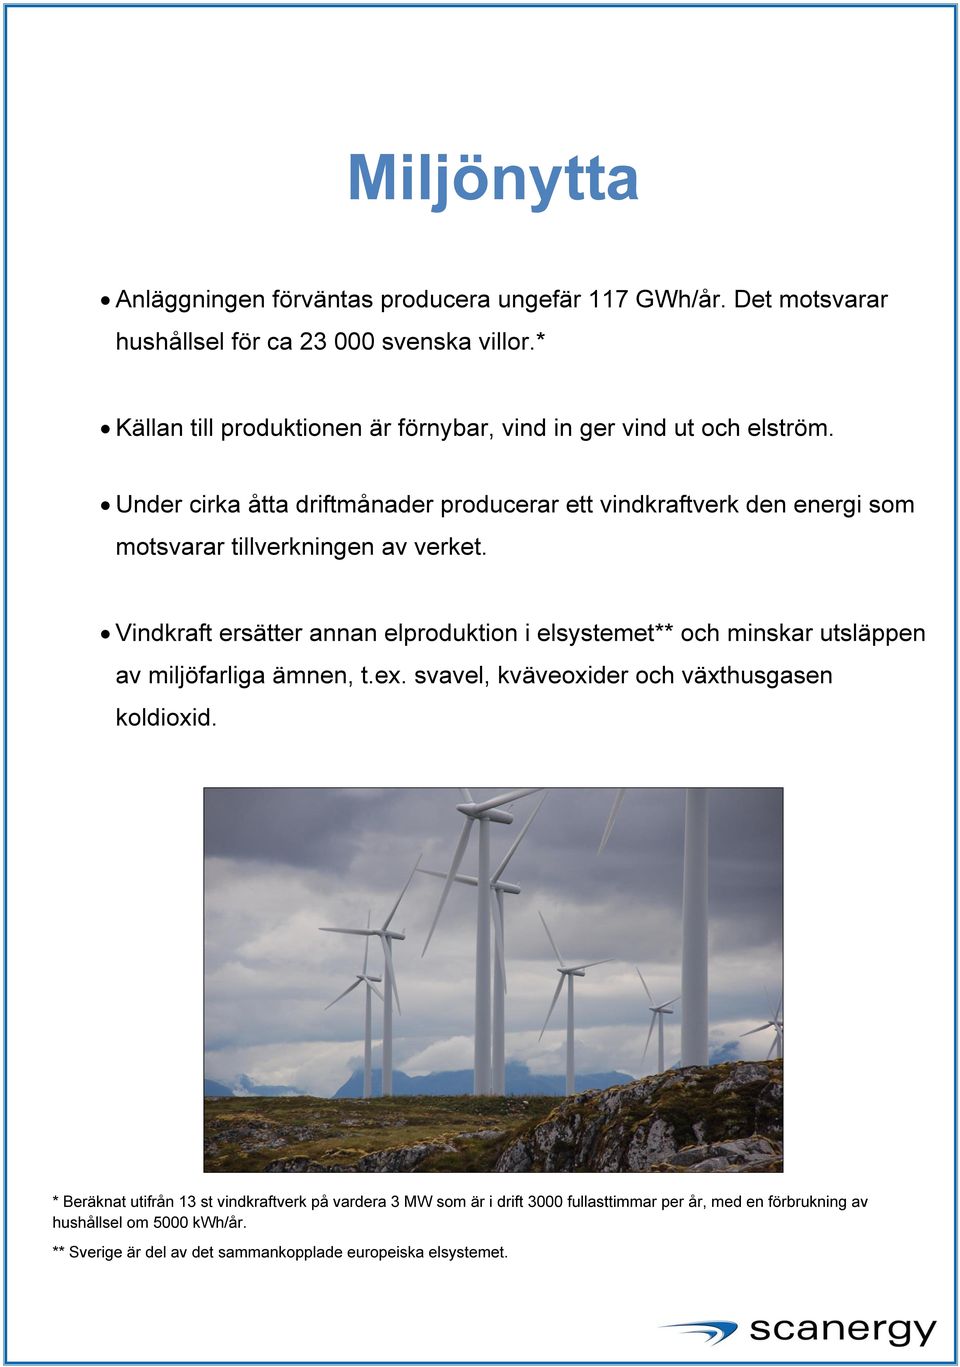 Under cirka åtta driftmånader producerar ett vindkraftverk den energi som motsvarar tillverkningen av verket.